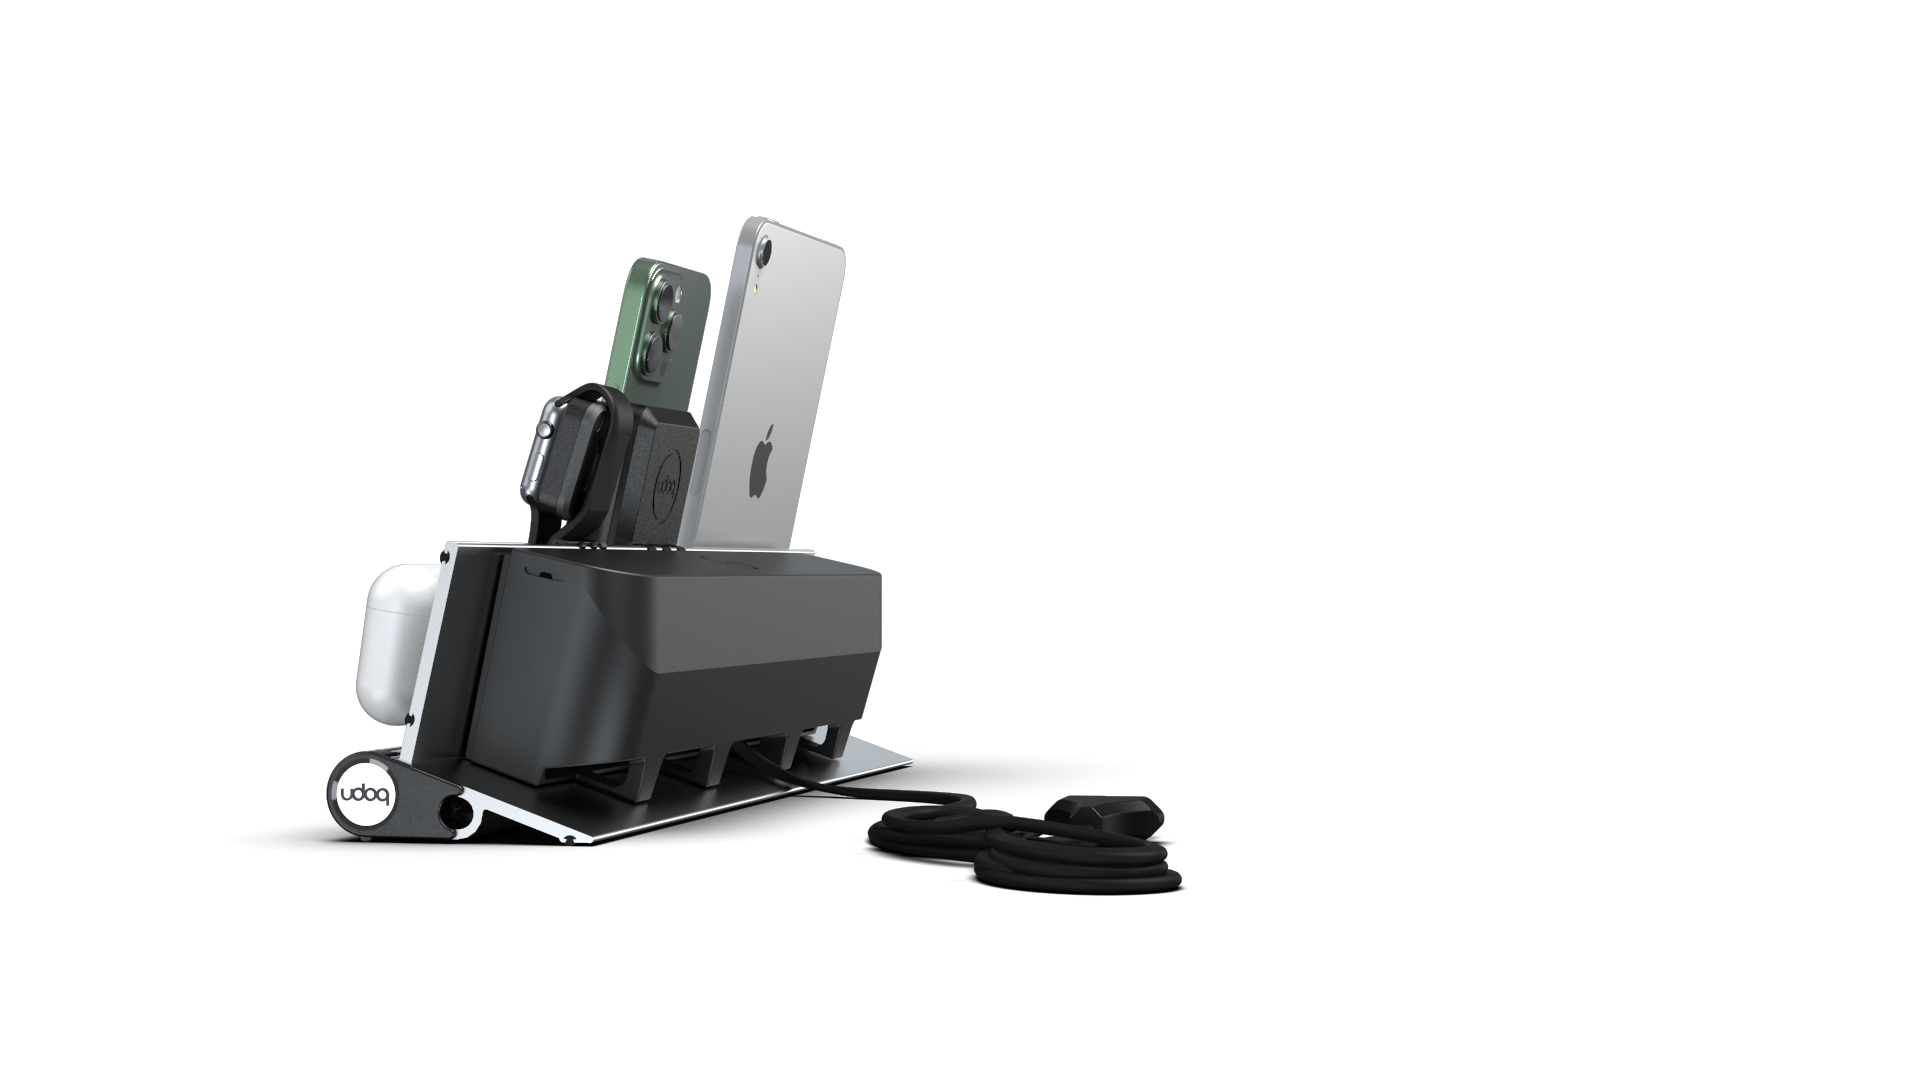 udoq Station de charge multiple 400 en argent avec chargeur MagSafe et Power Delivery, adaptateur Apple Watch